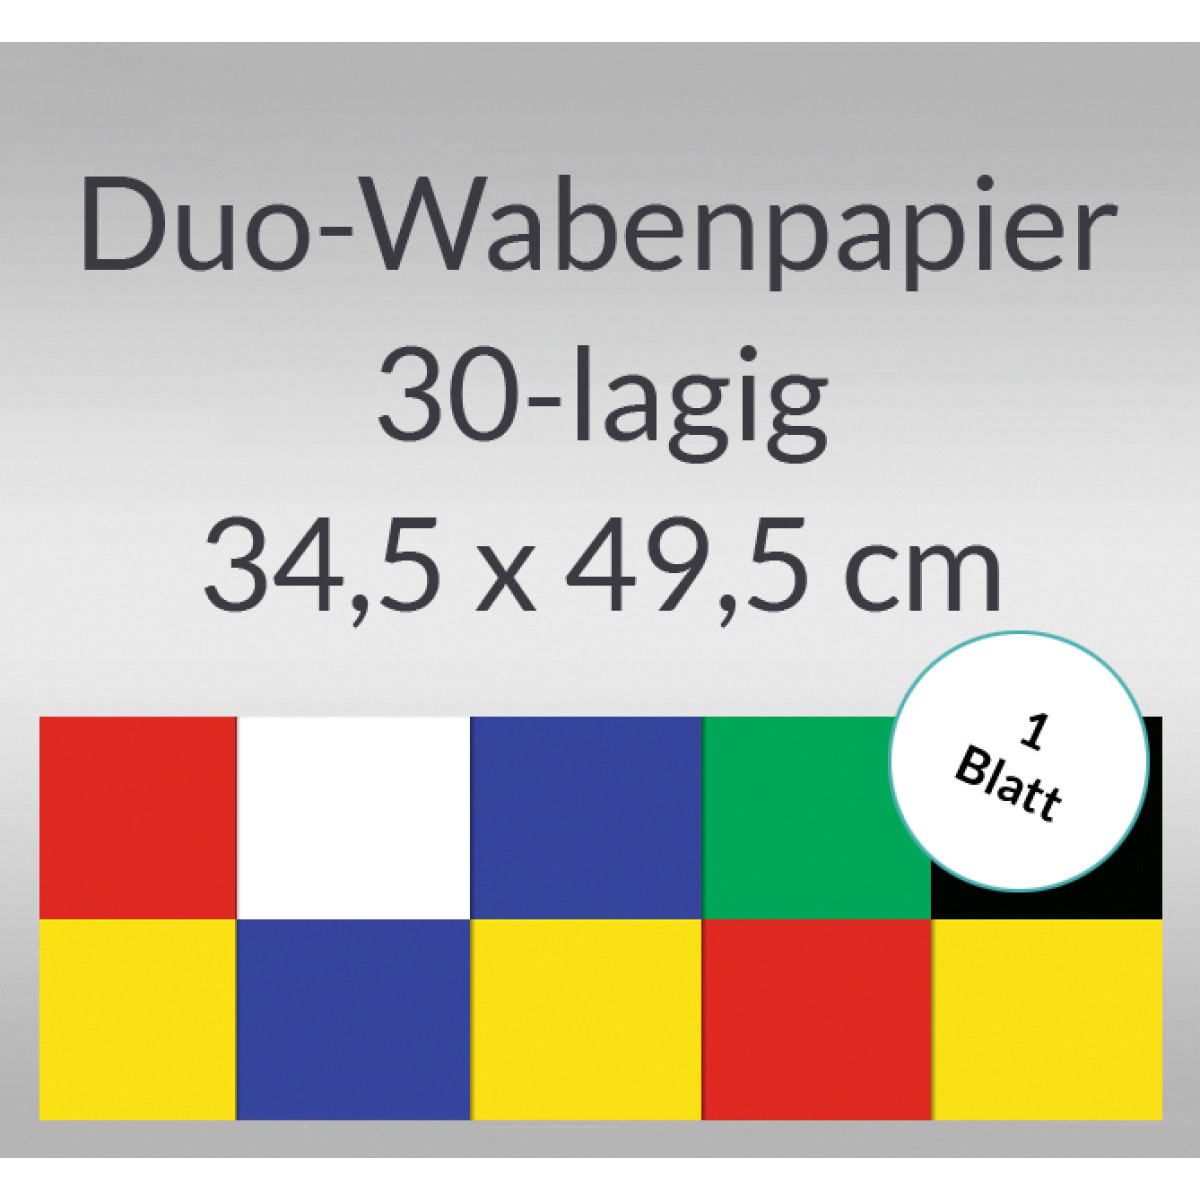 Duo-Wabenpapier 34,5 x 49,5 cm - 1 Blatt